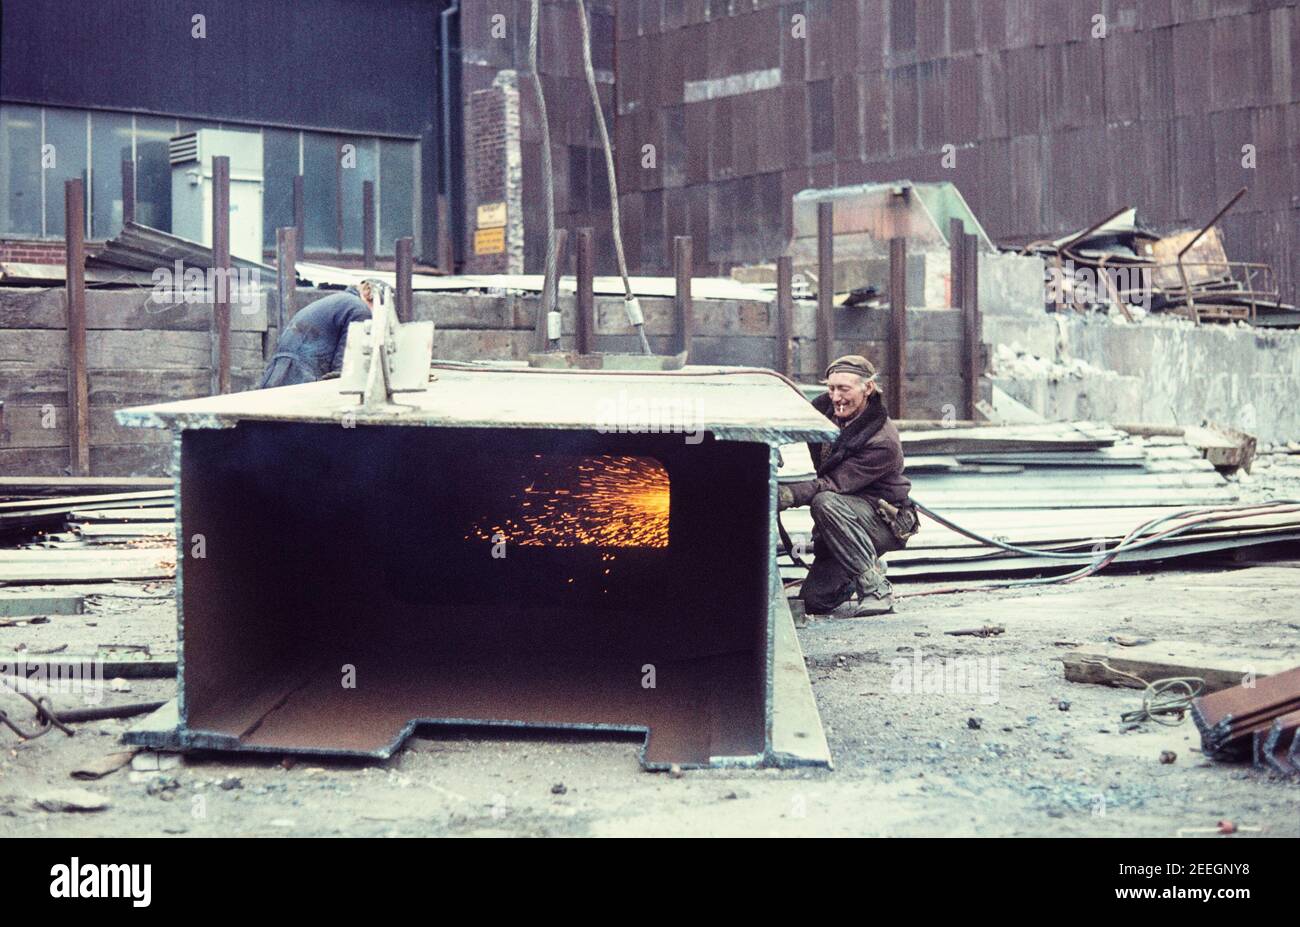 1977 Stocksbridge Sheffield - Homme utilisant une lance thermique à Couper les déchets de construction en acier d'un four en acier Stocksbridge Steel Works Stocksbridge Sheffield Angleterre GB Royaume-Uni Europe Banque D'Images